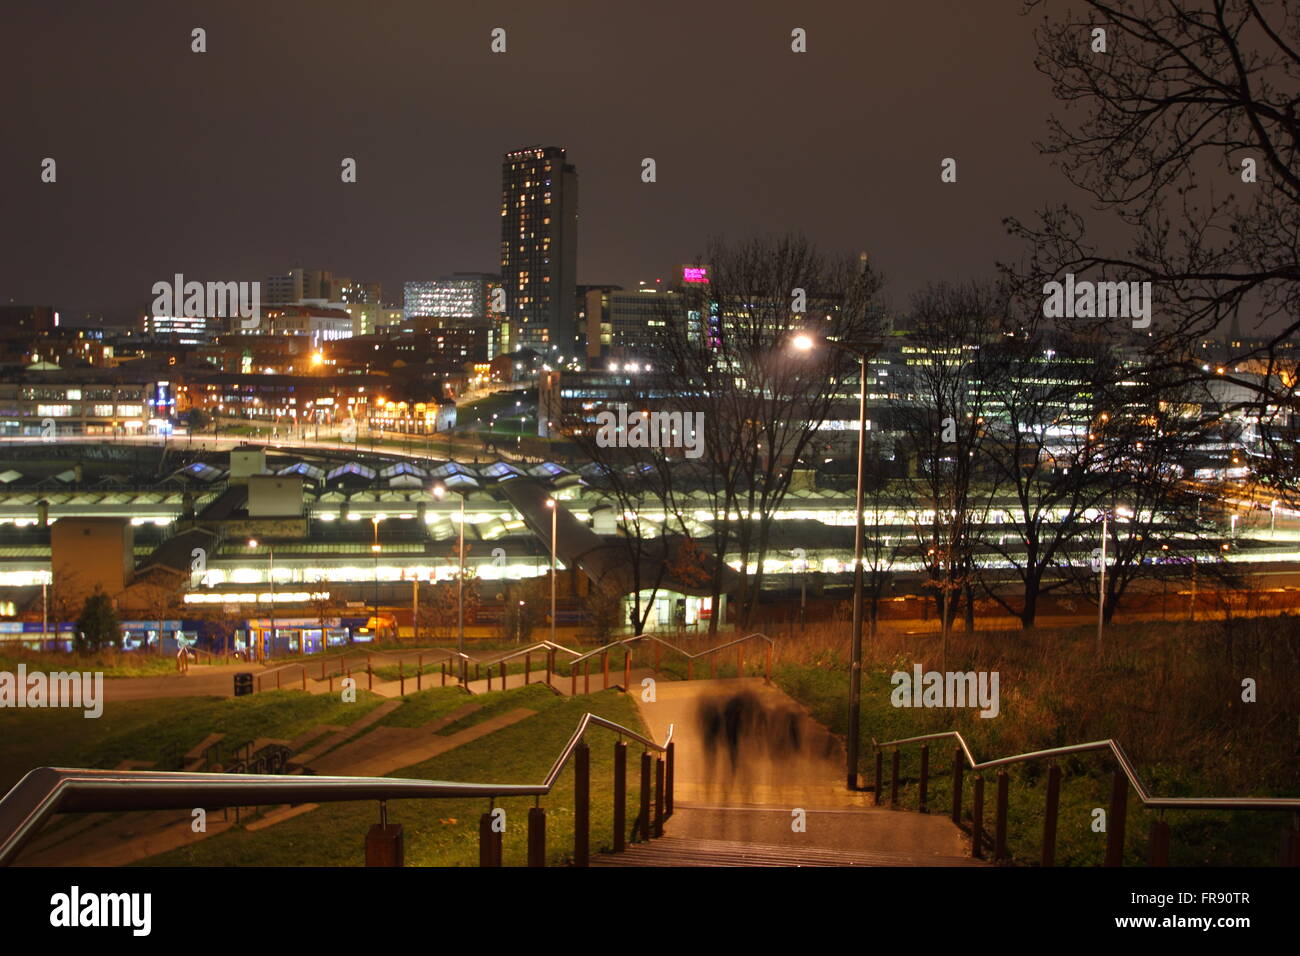 Die Skyline von Sheffield Stadtzentrum gesehen von Schritten durch South Street Park erhebt sich über der Stadt Hauptbahnhof UK Stockfoto